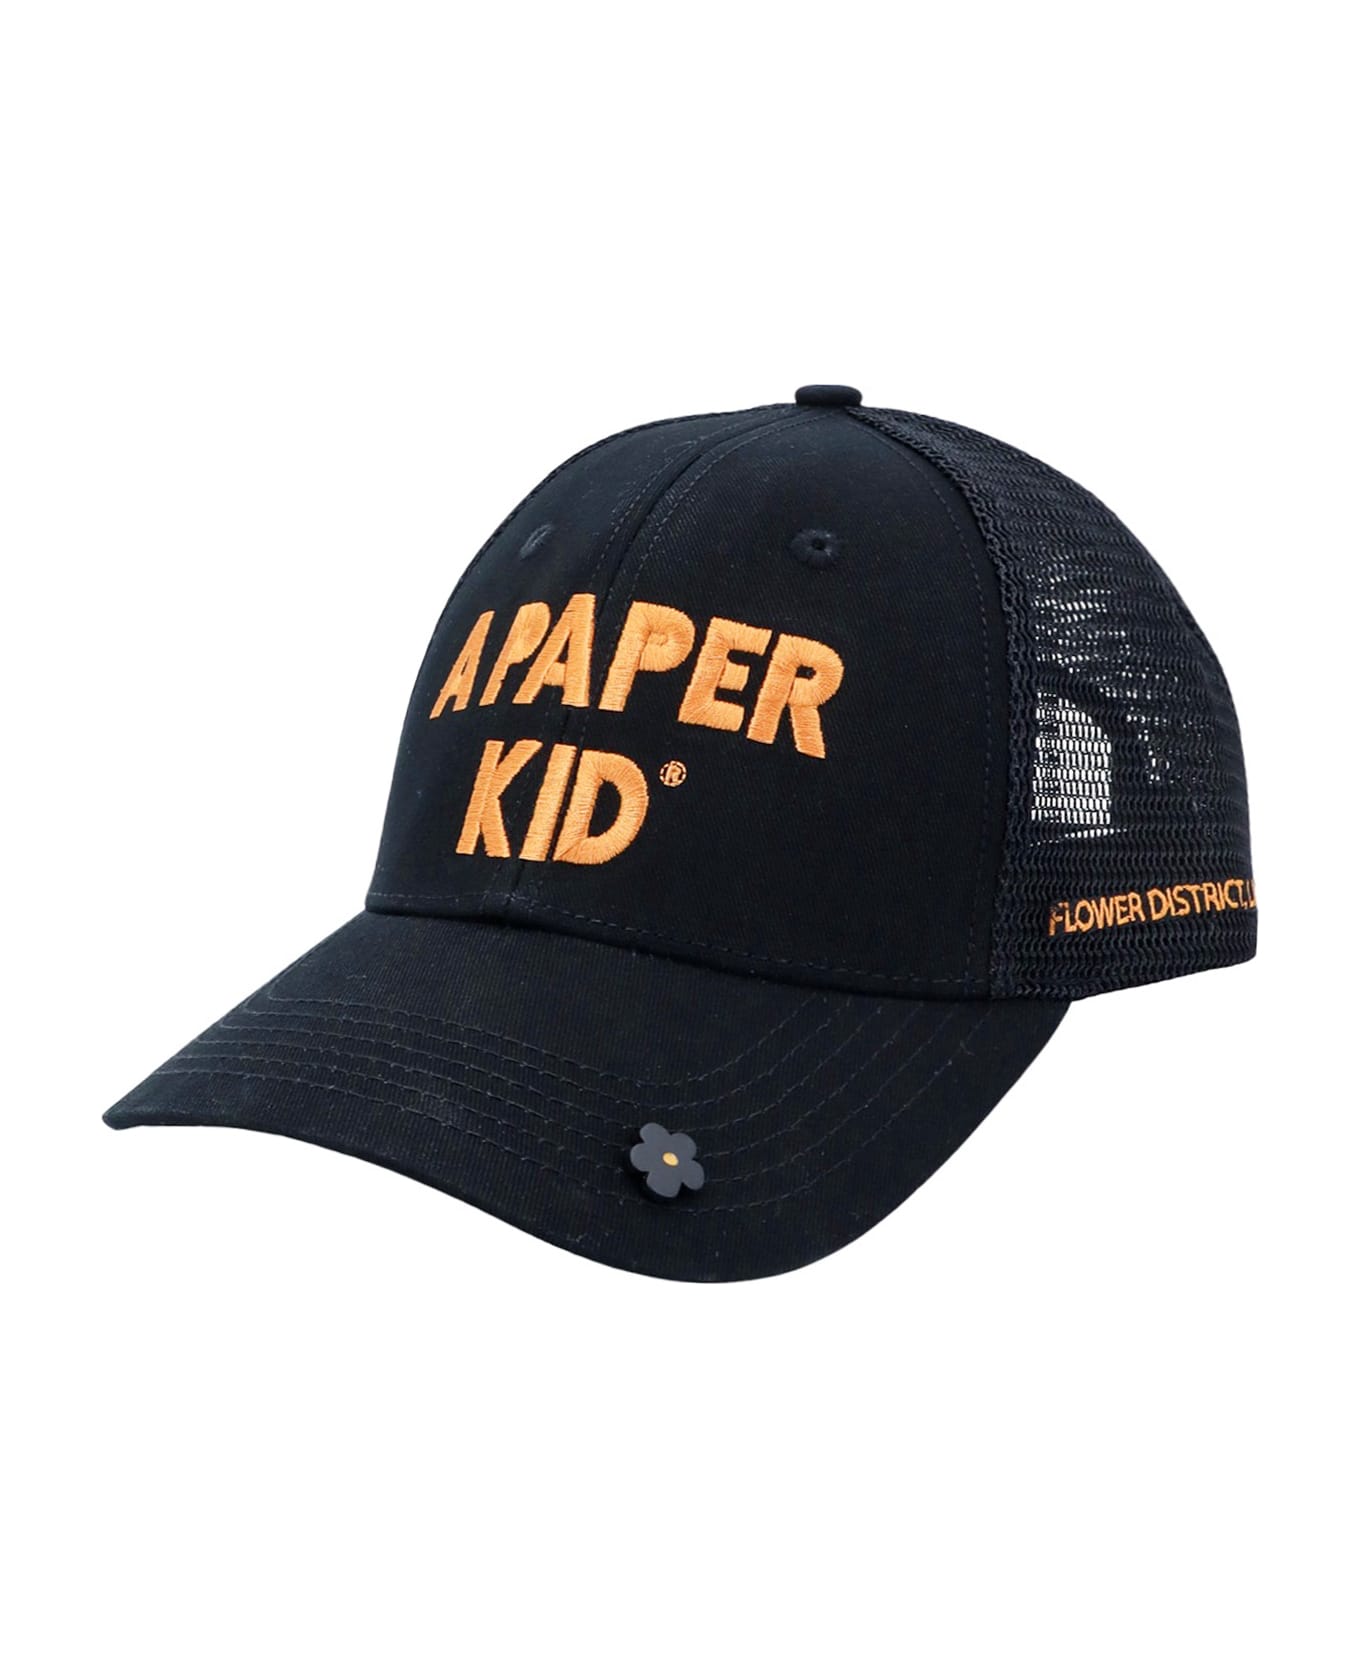 A Paper Kid Hat - Black